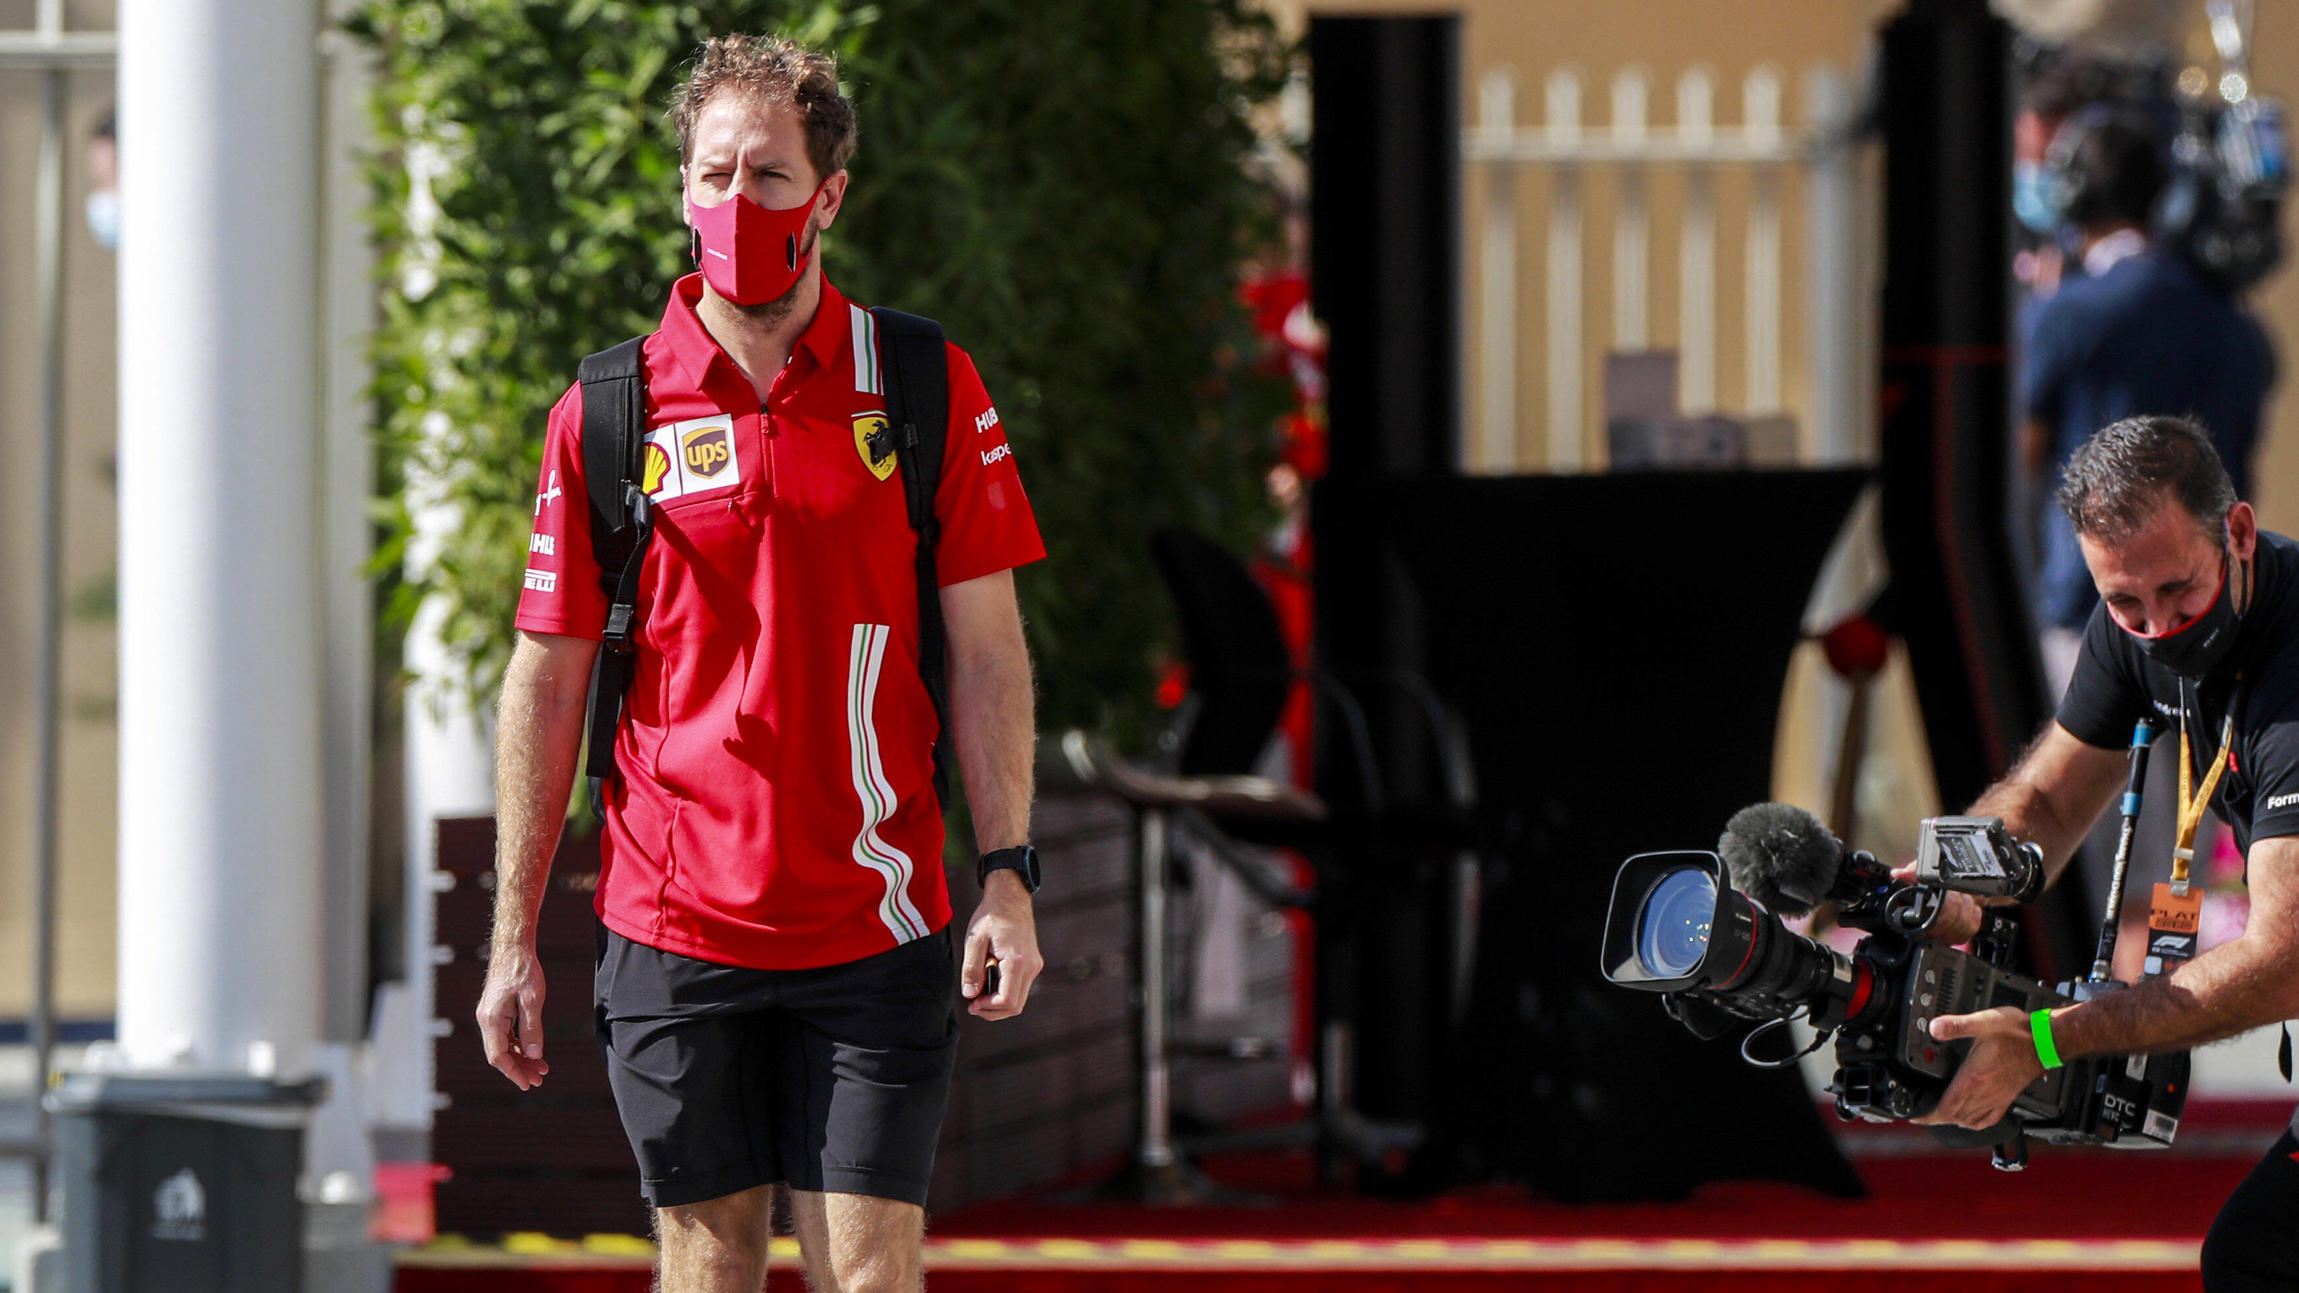 Formel 1 Sebastian Vettel Uberrascht Mit Neuer Frisur Zum Start Bei Aston Martin